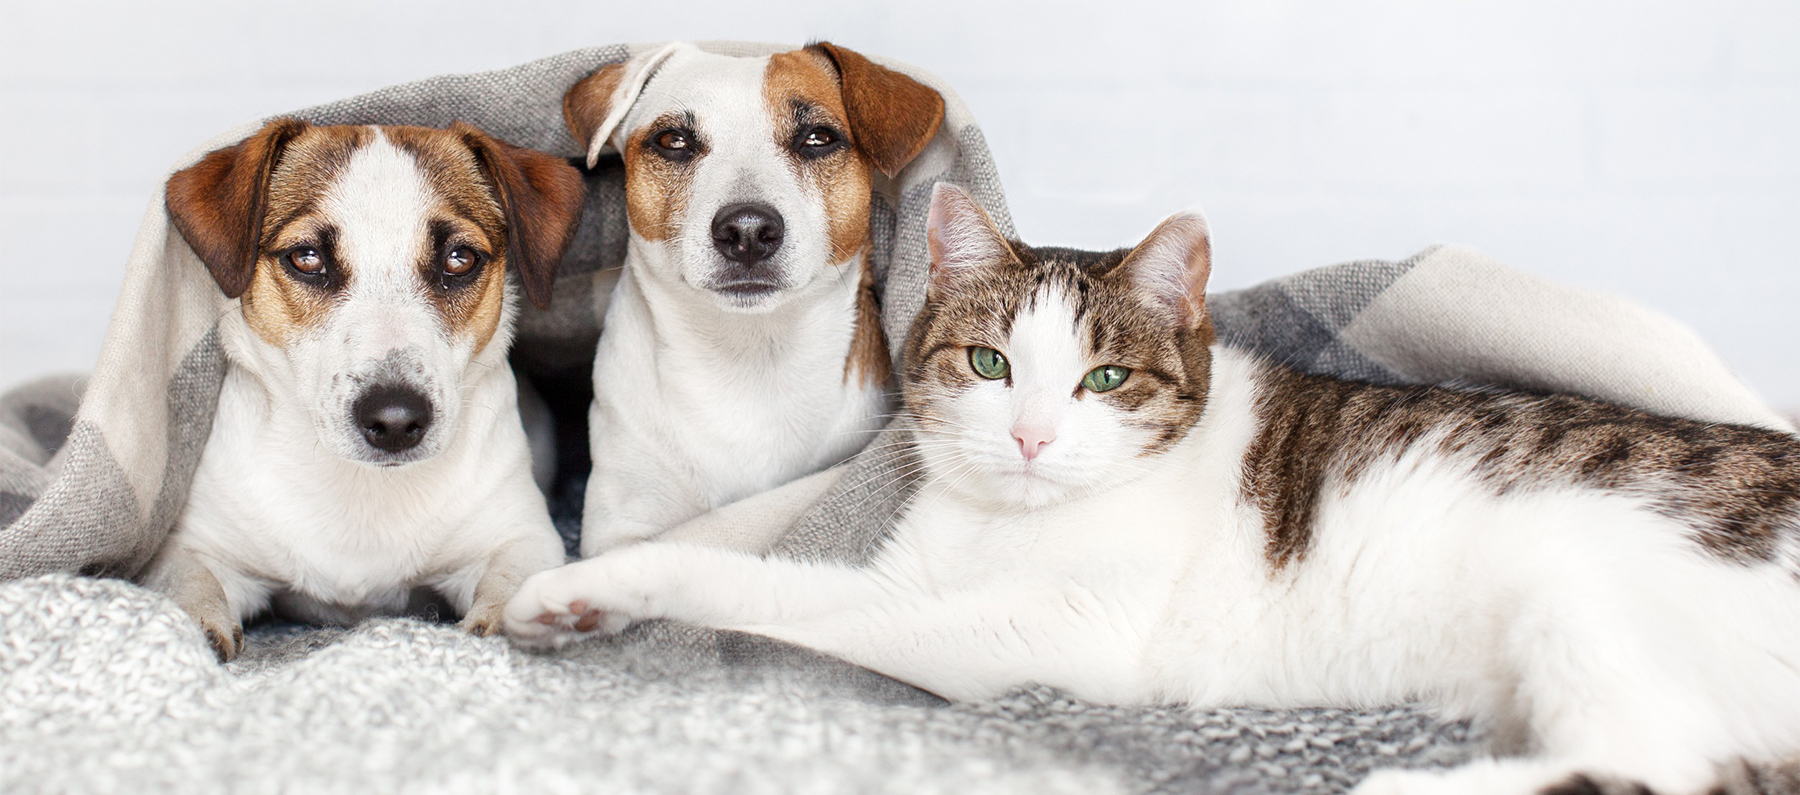 pets safe on blanket